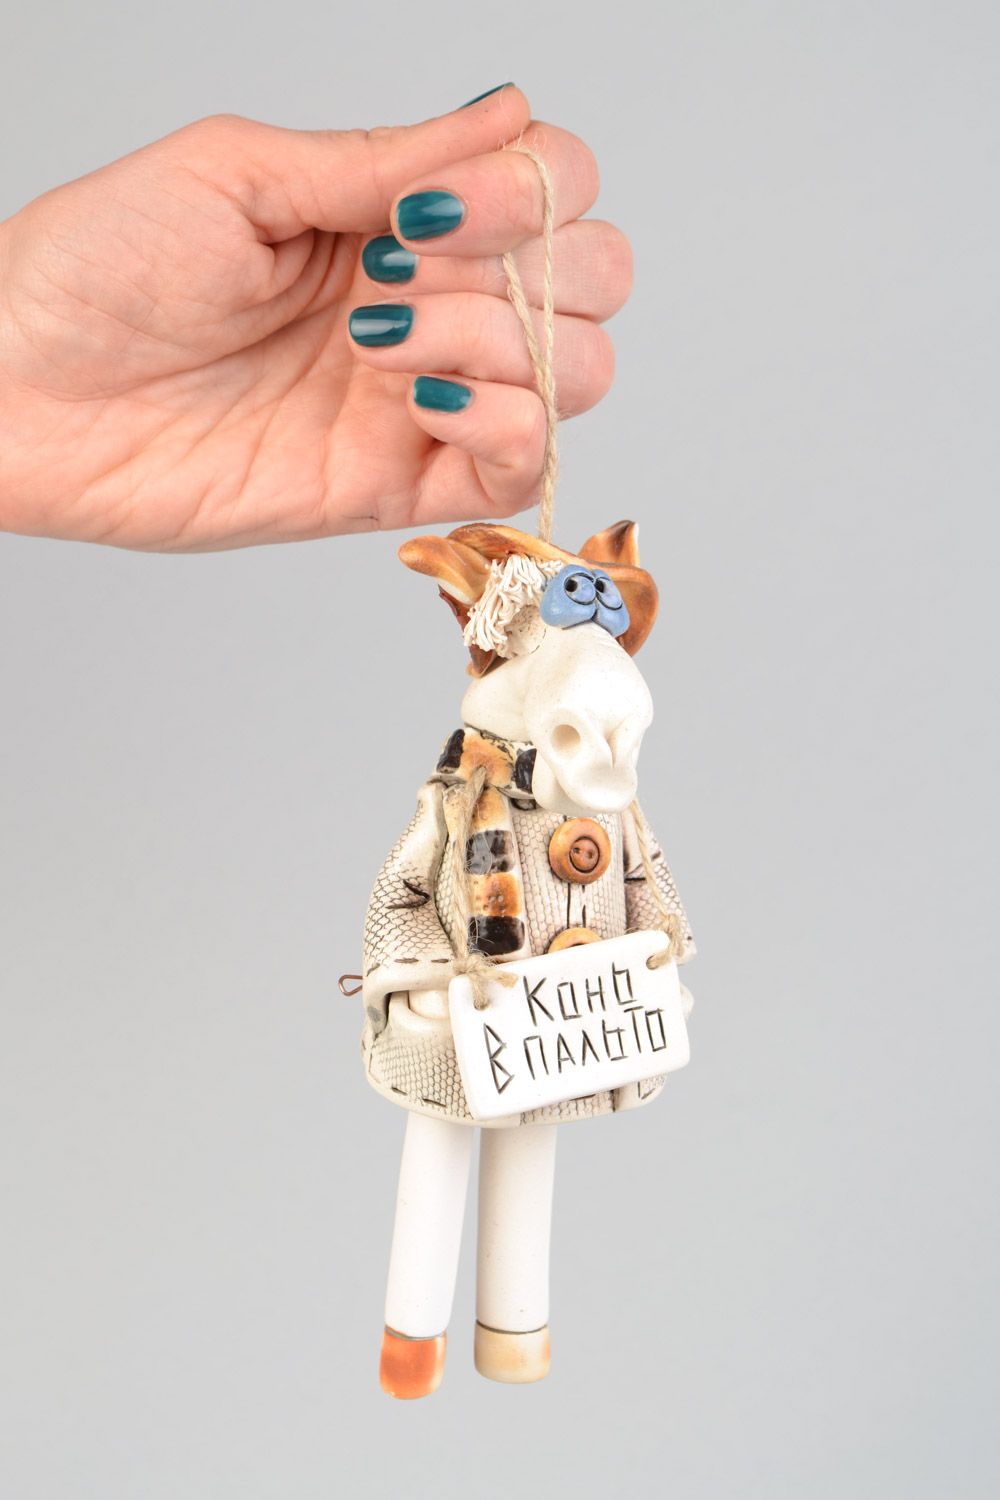 Авторский керамический колокольчик в виде коня в пальто для подарка хенд мэйд фото 1